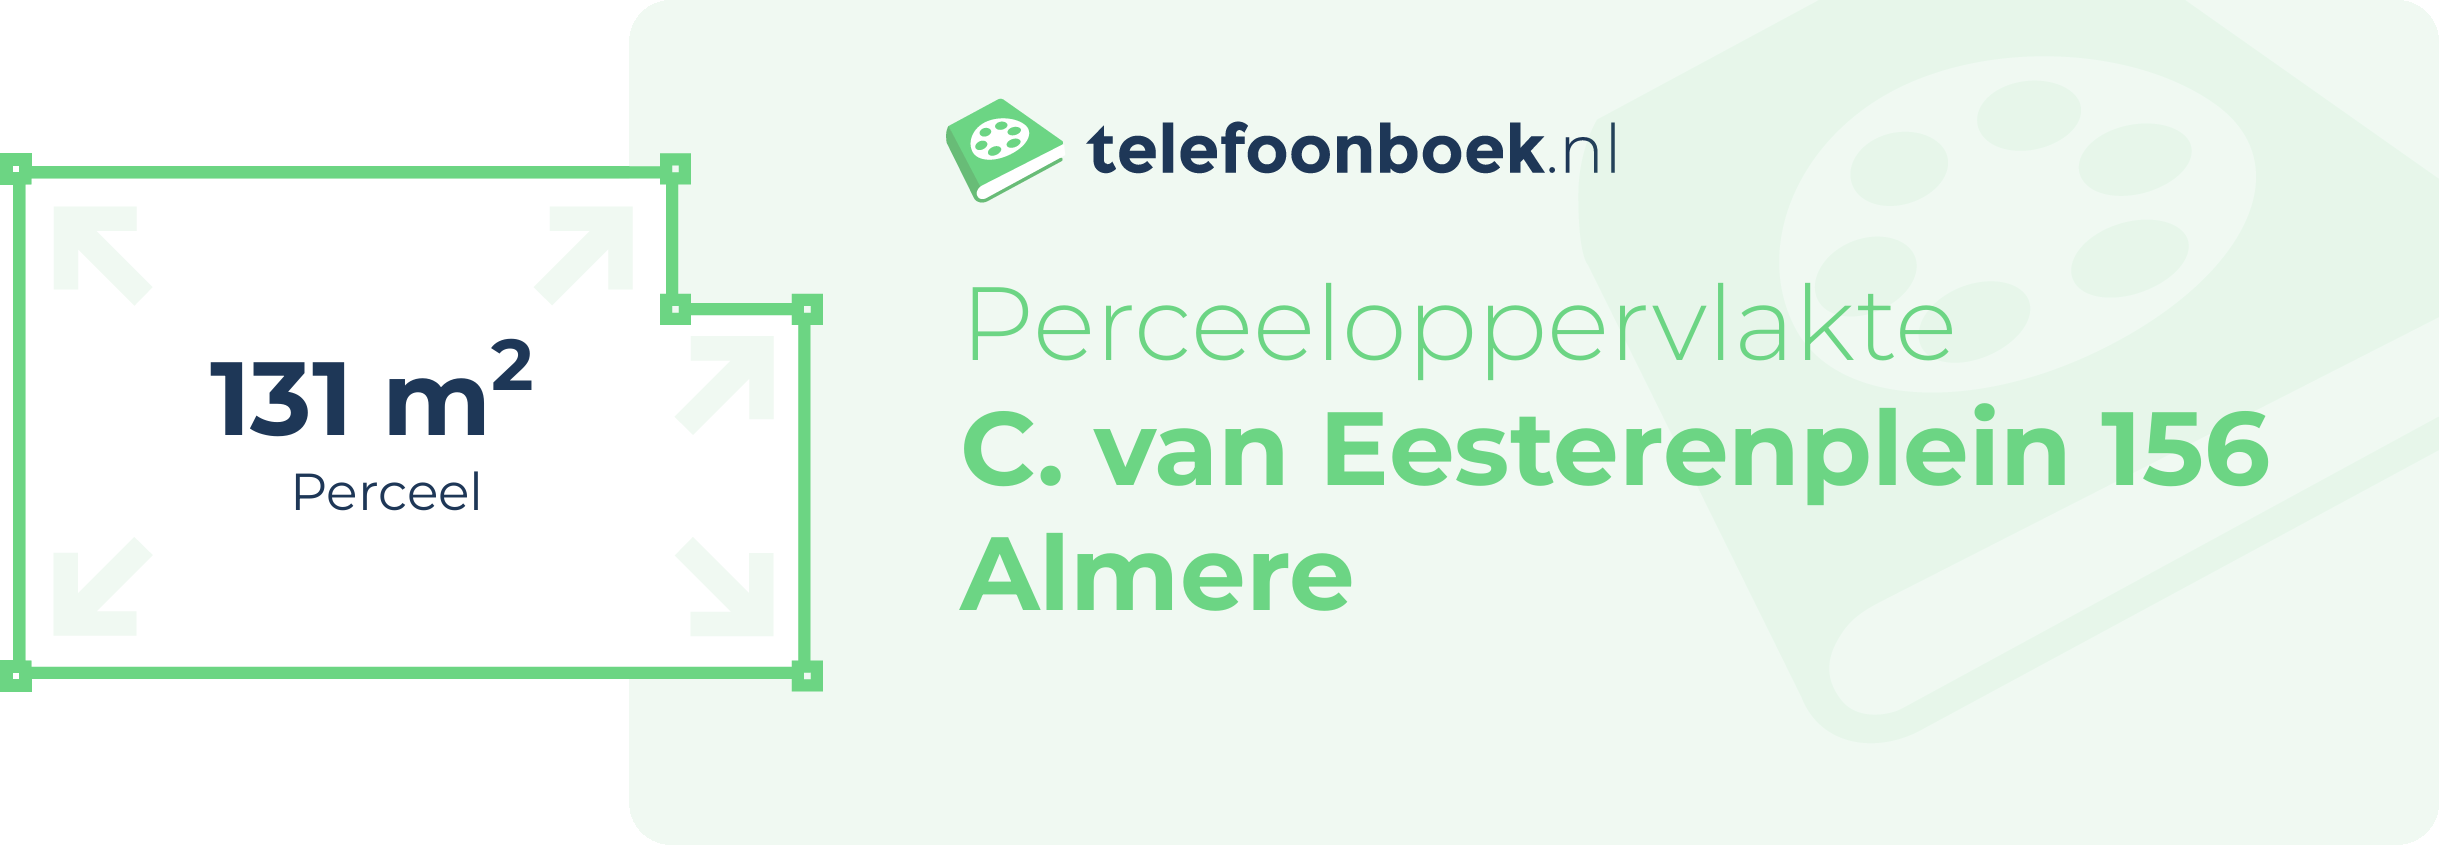 Perceeloppervlakte C. Van Eesterenplein 156 Almere